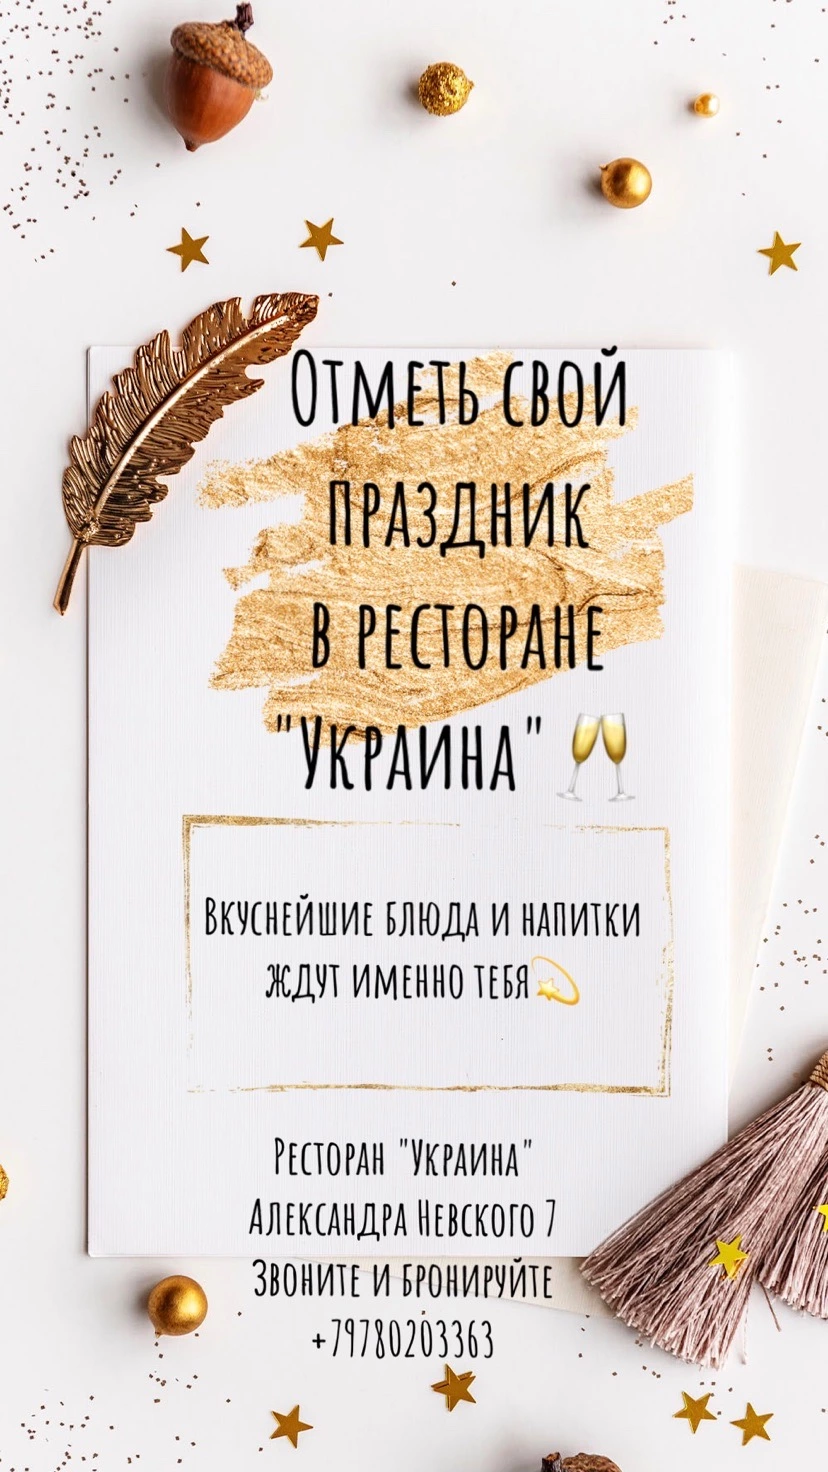 Ваш праздник в ресторане «Украина»